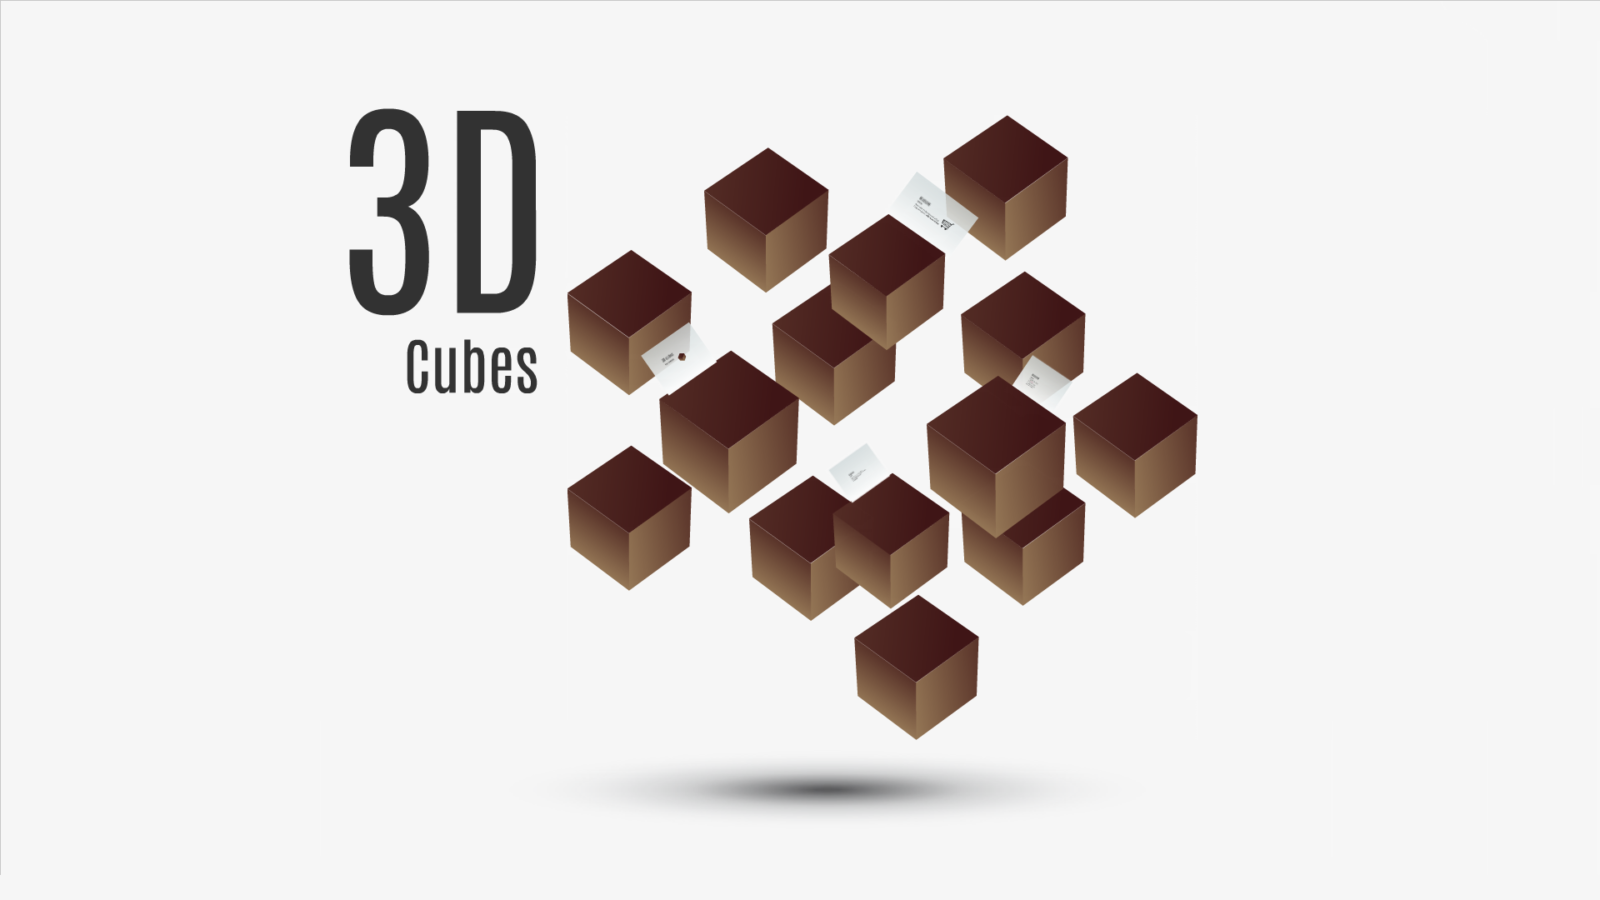 3D cubes Prezi template with cubes